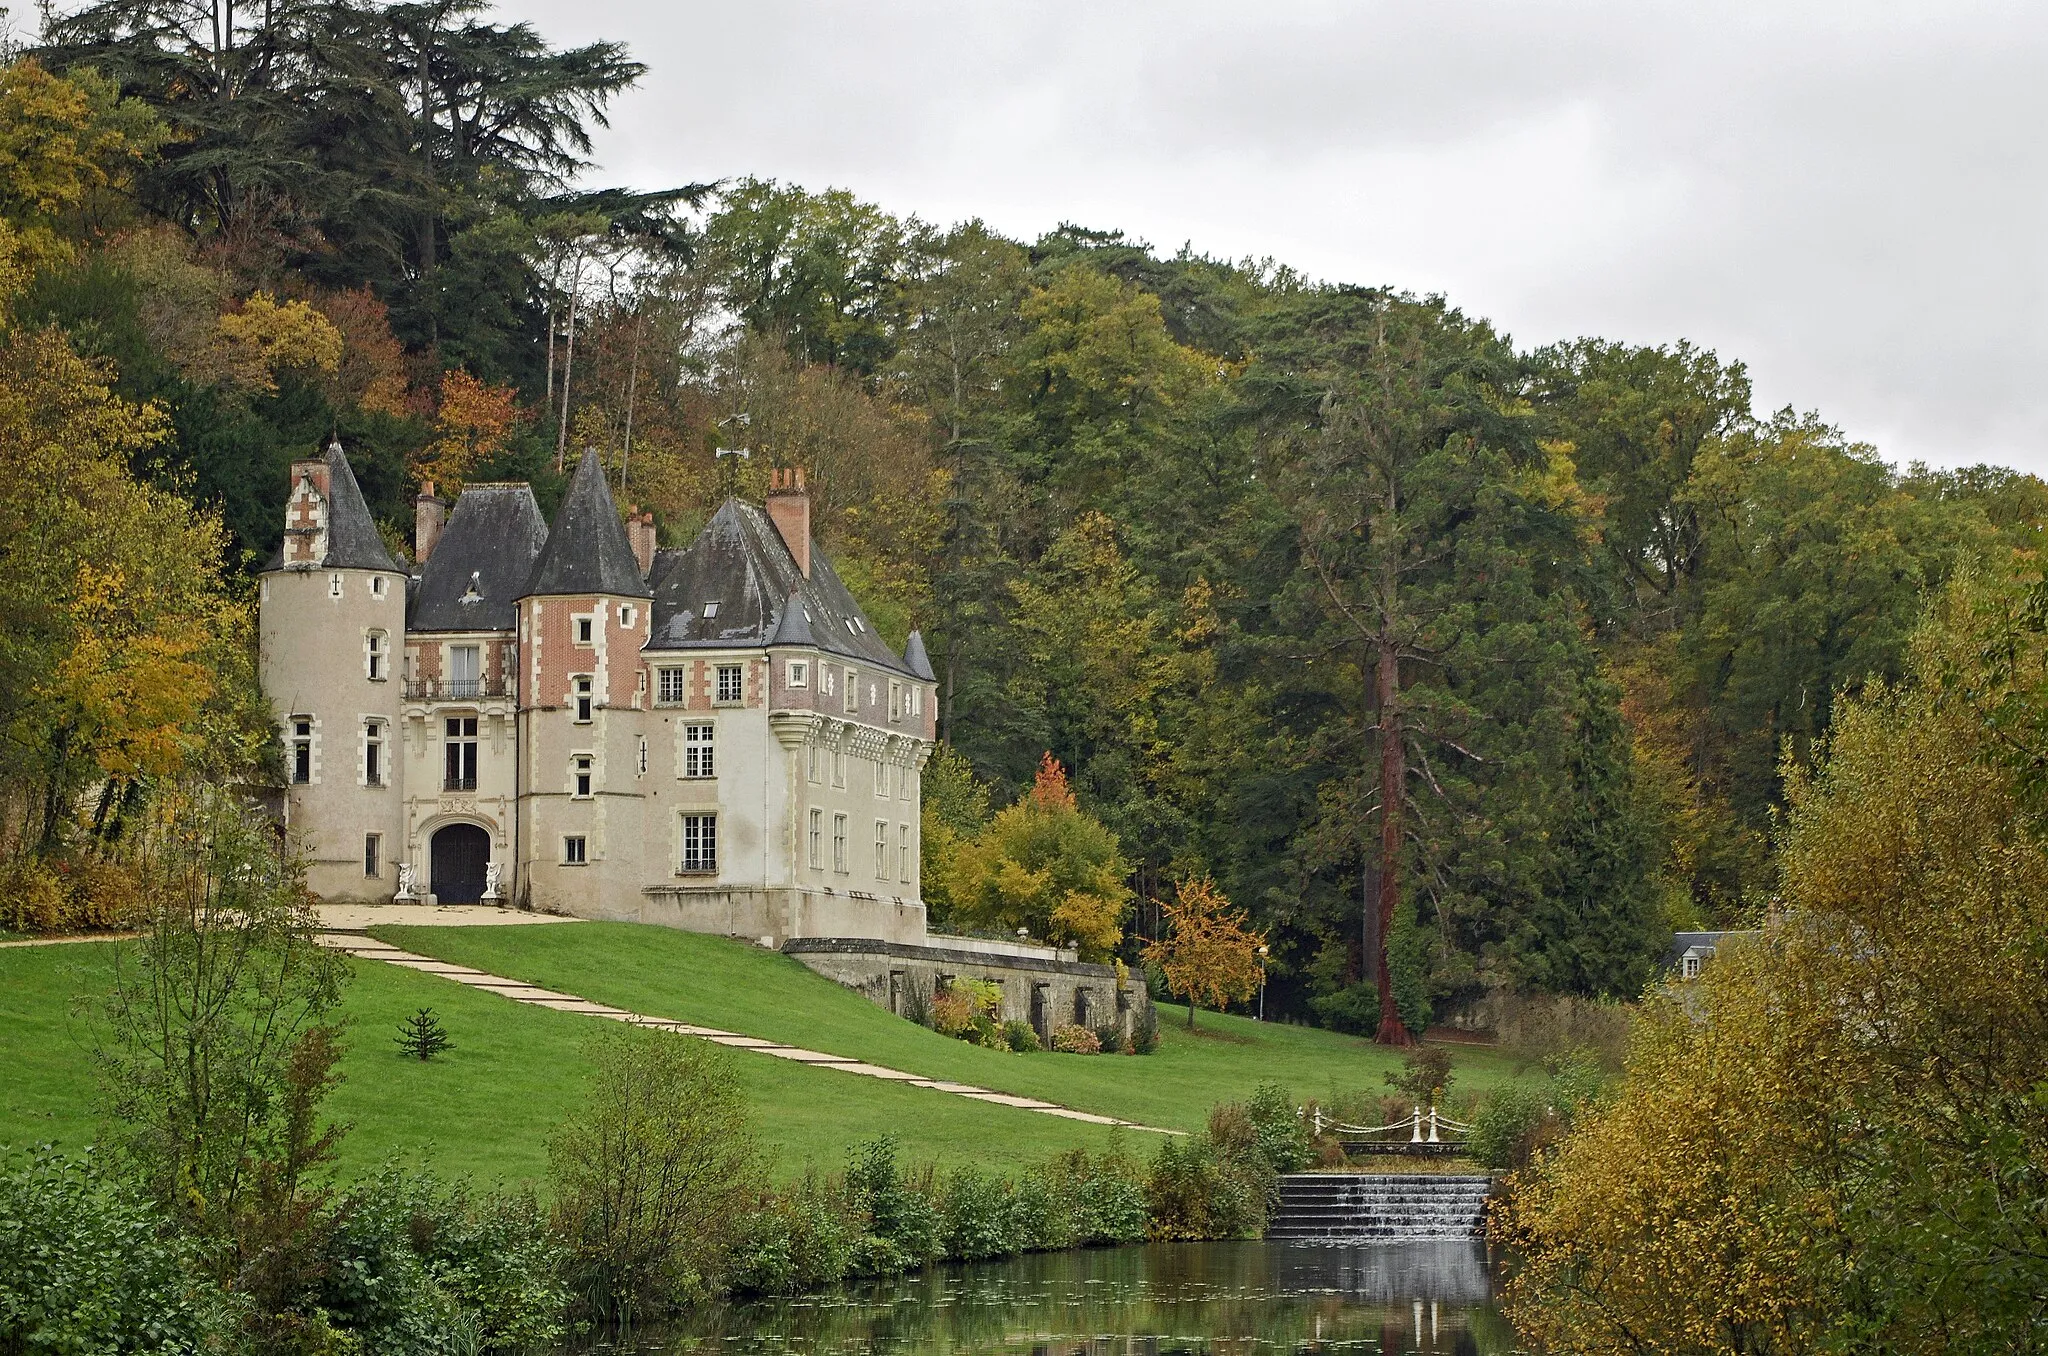 Photo showing: Pocé-sur-Cisse (Indre-et-Loire)
Château (XVe - XIXe siècles)
Le château de Pocé, dit « la Châtellenie », date du XVème siècle, il domine la Ramberge, rivière qui coule en cascade au travers du parc et rejoint la Cisse à environ 1,5 km.
Le domaine comprend une quarantaine d'hectares de vignes, il accueillait autrefois une Fonderie d’Art Jean-Jacques Ducel, célèbre fondeur d'art, qui employait plus de 400 ouvriers et fonctionna jusqu'en 1877. Les statues du parc sont issues de la fonderie. En amont du bief les deux statues représentent Neptune et Vénus.
Le château a été restauré en 1815 et un étage en briques a été ajouté en 1868.
Le parc, ouvert à la promenade, comprend de nombreuses variétés d'arbres.
Le domaine est la propriété actuelle de la Fondation Bertrand pour l'enfance: Le lieu a été légué par la famille Bertrand*, en 1924, en faveur de l'enfance abandonnée.
L'origine et l'histoire du domaine est incertaine. L'ancienne châtellenie relevait de Rochecorbon. On sait qu'un certain Jehan du Bueil en est propriétaire à la fin du XIVe siècle. Au XIXe siècle, des maîtres de forges succèdent aux barons : La famille Moisand* modifie le château et Jean-Jacques Ducel* fait construire deux ailes.
Le domaine du château avait été vendu comme bien national le 19 juillet 1796 à A. Moisand, maître de forge. Celui-ci obtiendra le droit d'y construire un haut fourneau le 15 octobre 1823.
La fonderie passera ensuite dans les mains d'un certain J. Nobilleau avant de passer dans les mains de J.-J. Ducel et Viry.

Monsieur et madame Bertrand avaient acheté le château en janvier 1889. Sans descendance, M. Julien Bertrand avait déposé un testament olographe le 6 octobre 1924 par lequel il léguait l'ensemble des biens familiaux au Bureau de Bienfaisance de Pocé, afin d'y établir un orphelinat pour jeune filles. Sa femme, Mme Bertrand, gardant l'usufruit du domaine. M. Bertrand, originaire de la Côte d'Or, était un ancien colon d'Algérie où il possédait un vignoble de 400ha et une orangerie de 70 ha. Il décédera dans sa résidence d'Alger en 1925, et son épouse à Pocé en 1937. La Fondation Julien Bertrand sera reconnue d'utilité publique en 1952. En 1823, Augustin Moisand, obtient l’autorisation de construire une usine à fer sur la Ramberge à Pocé-sur-Cisse. Six ans plus tard, son gendre revend l’usine à Jacques Ducel et Paulin Viry, fondeurs. Avec Jean-Jacques Ducel, la fonderie devient l’une des plus grandes fonderies d’art de France, employant plus de 400 ouvriers et exportant sa production partout dans le monde. L'usine renfermera deux hauts-fourneaux et un fourneau de fonte de seconde fusion. L'activité cessera avec la mort de Jean-Jacques Ducel. Le fond de Modèles a été repris par le Val D’Osne, principale Fonderie d’art de la 2ème moitié du XIXe siècle et qui elle, arrêtera ses activités en 1986. www.calameo.com/books/0018684110683b52f2db4
www.paysloiretouraine.fr/pays-loire-touraine/principal/le...

savoir.fer.free.fr/pGLO/5e_ed/V_pdf/Saga/TdFd/D37-rM.pdf